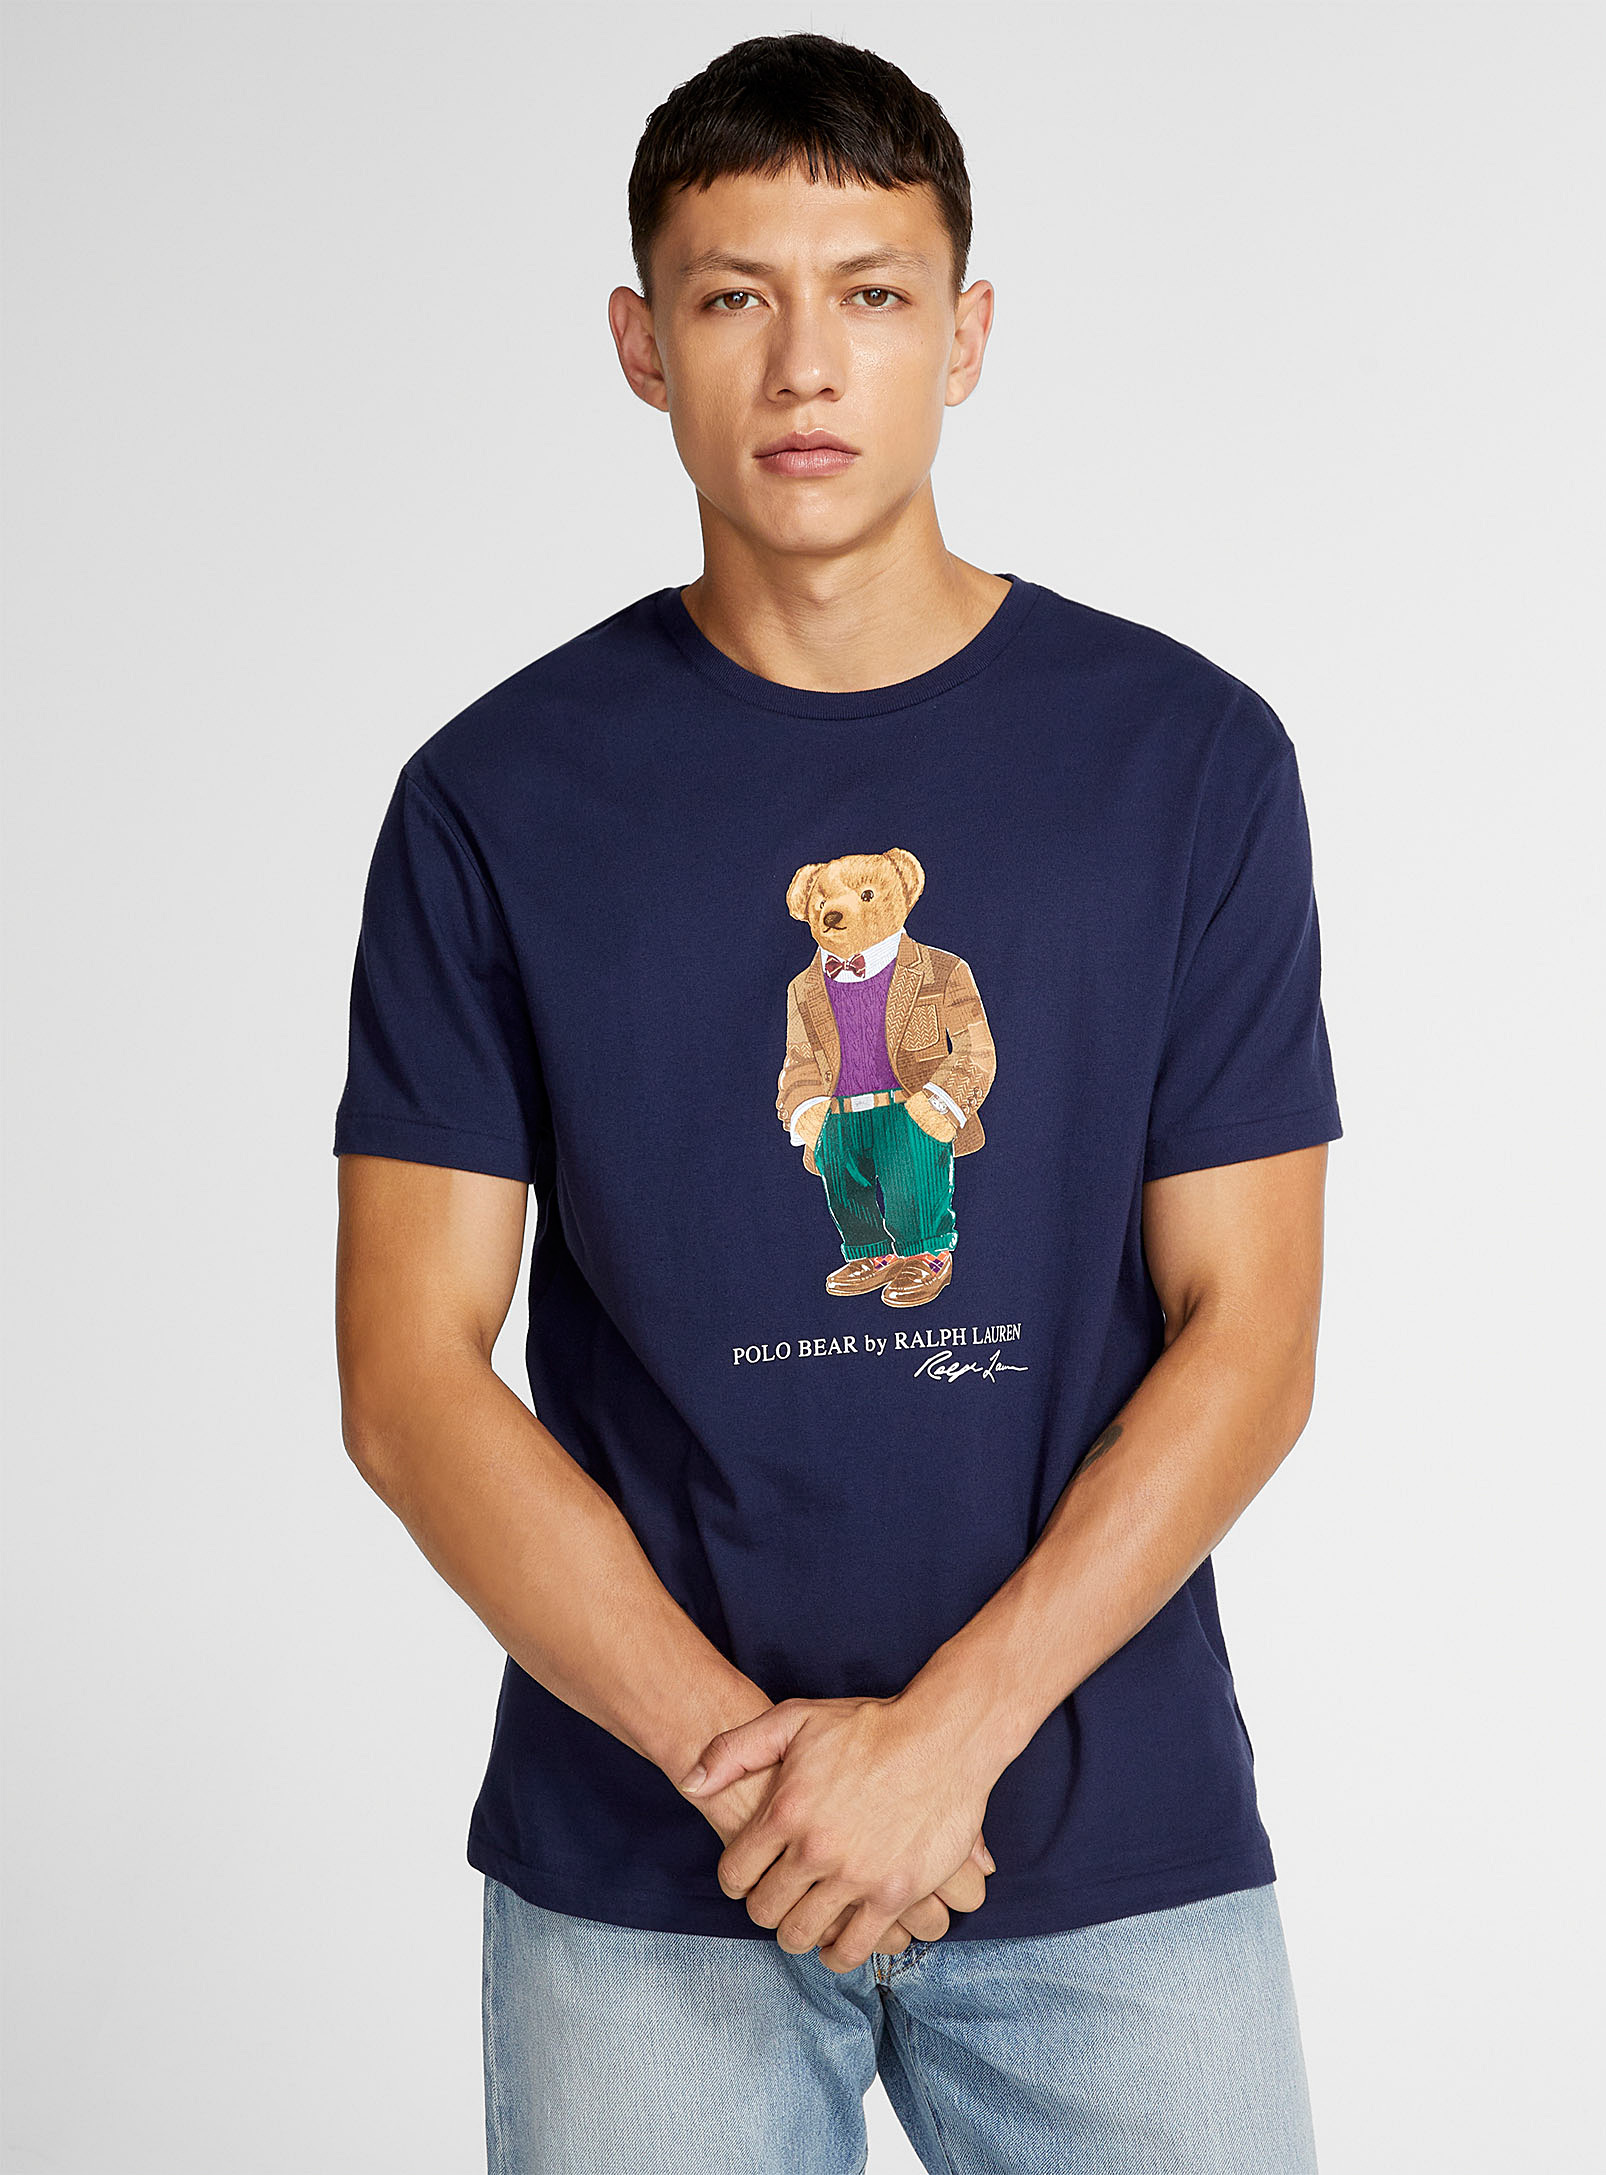 polo shirt teddy